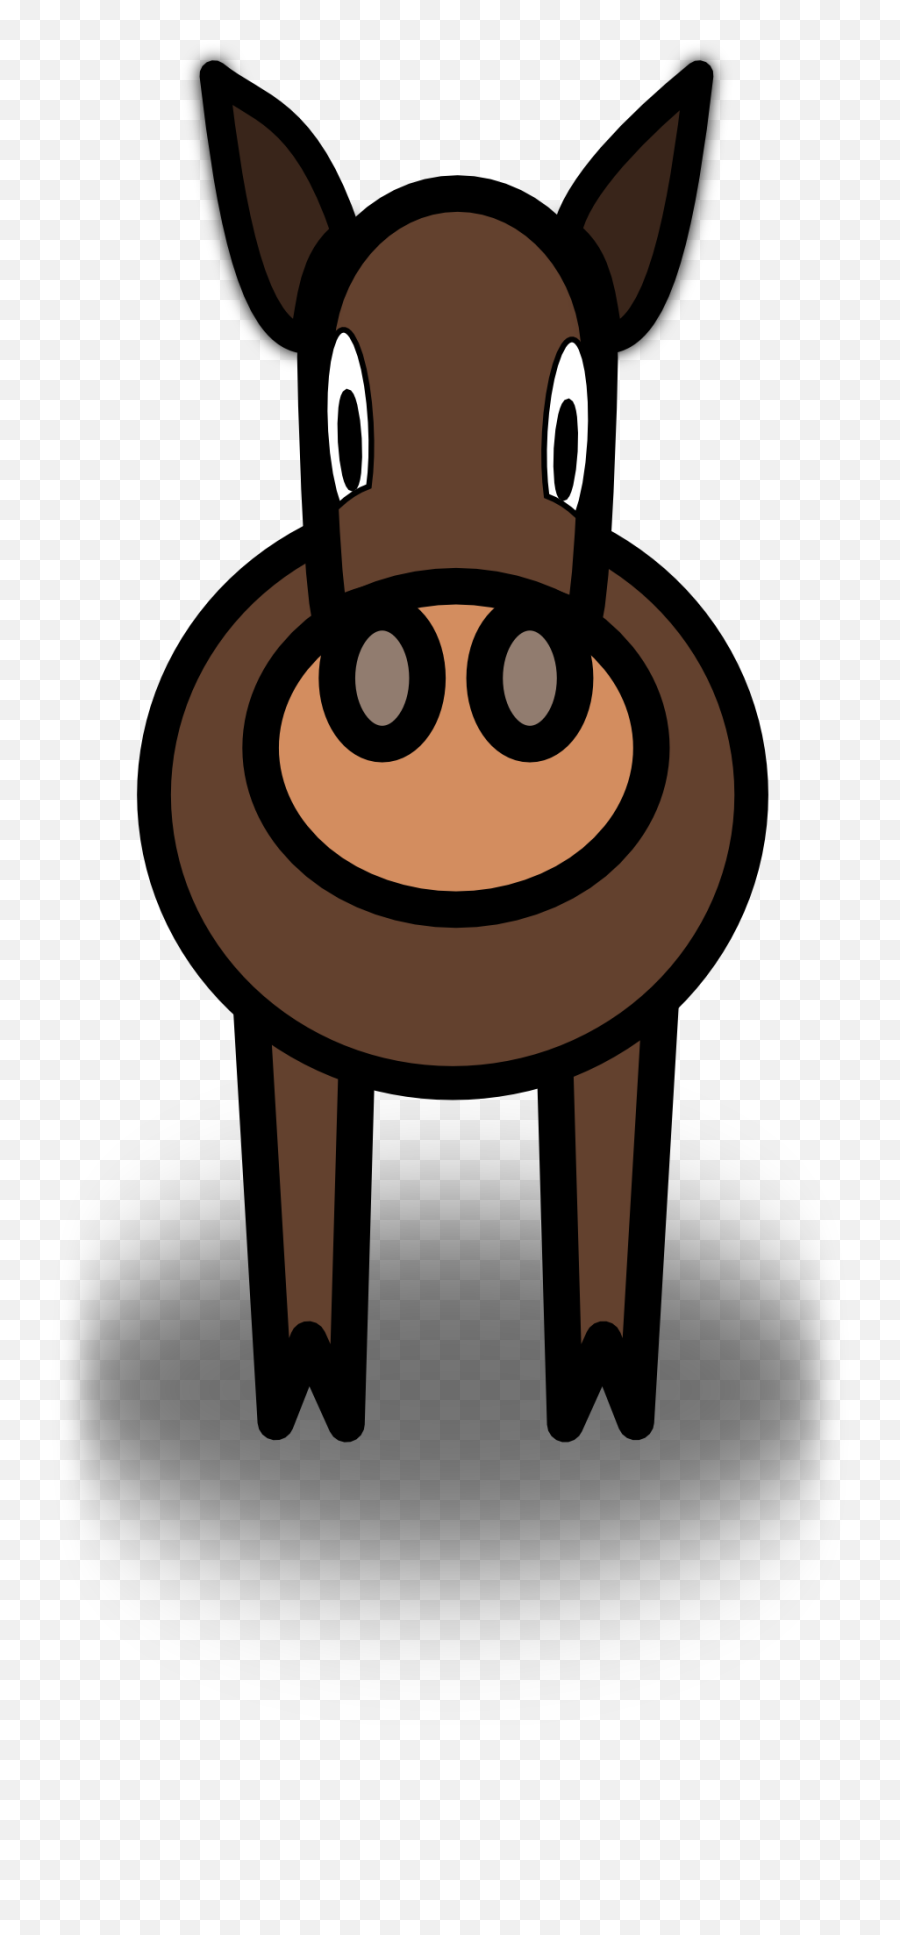 Painted Brown Round Donkey Free Image Download Emoji,Dnkey Emoji